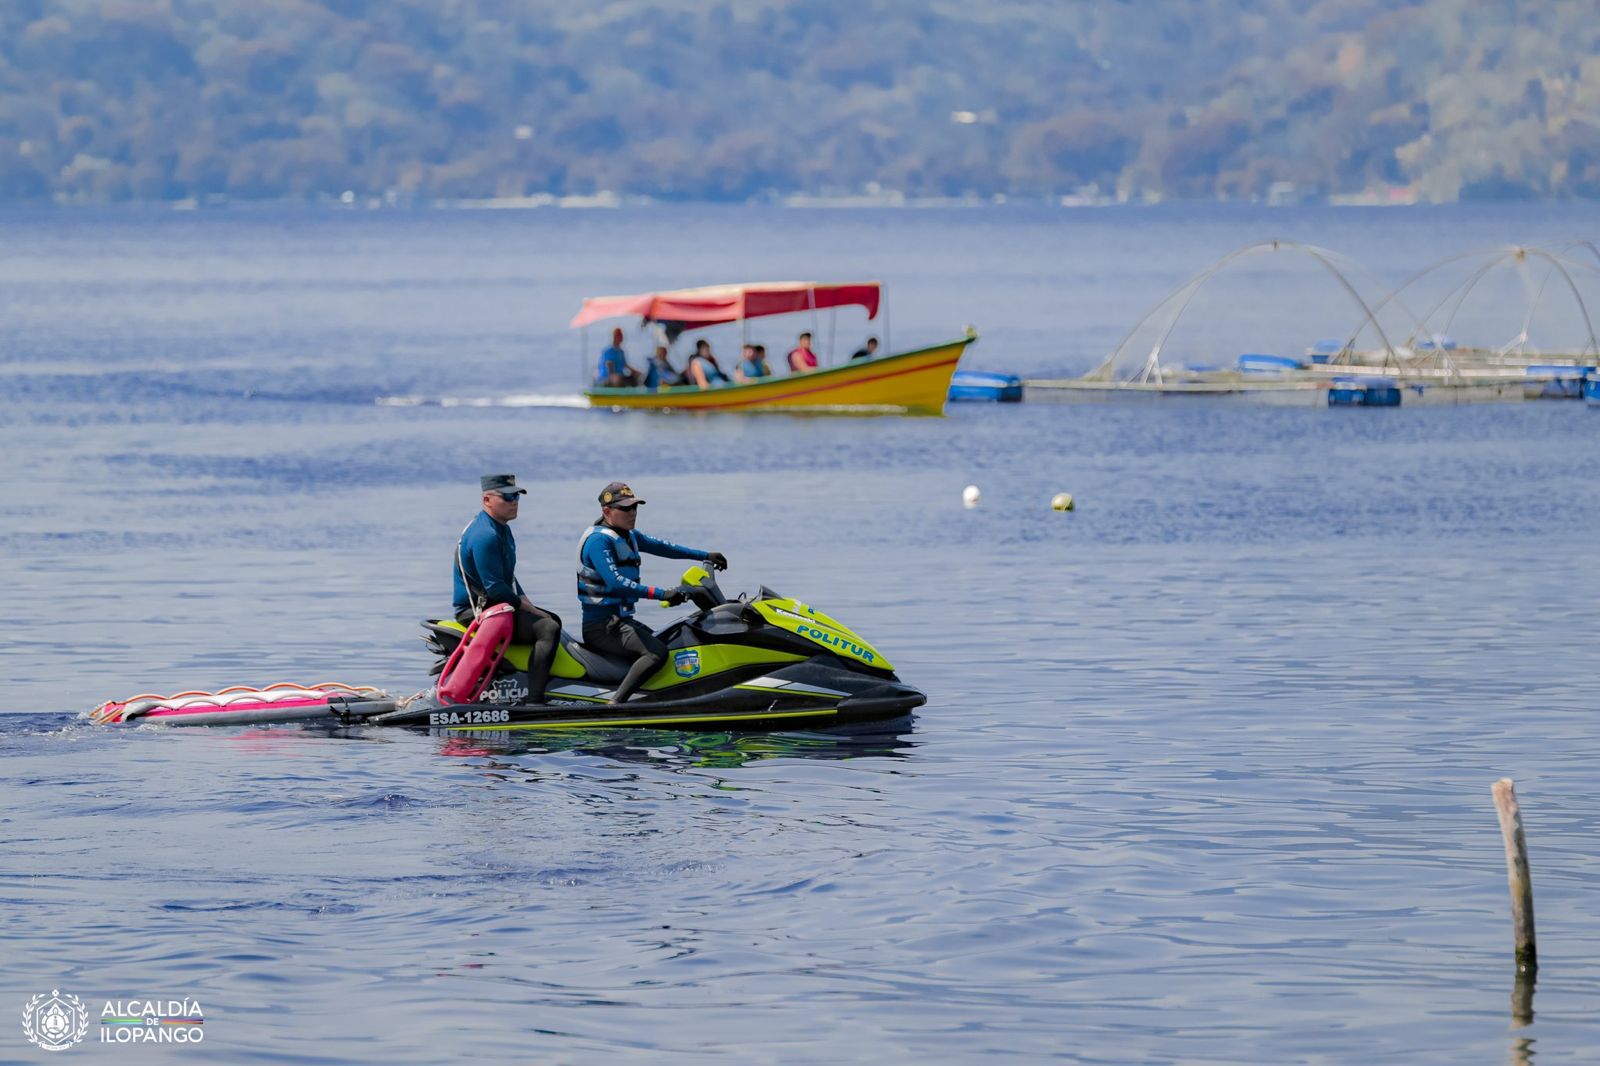 Vía Vela deja una buena imagen del lago de Ilopango ante los turistas nacionales y extranjeros